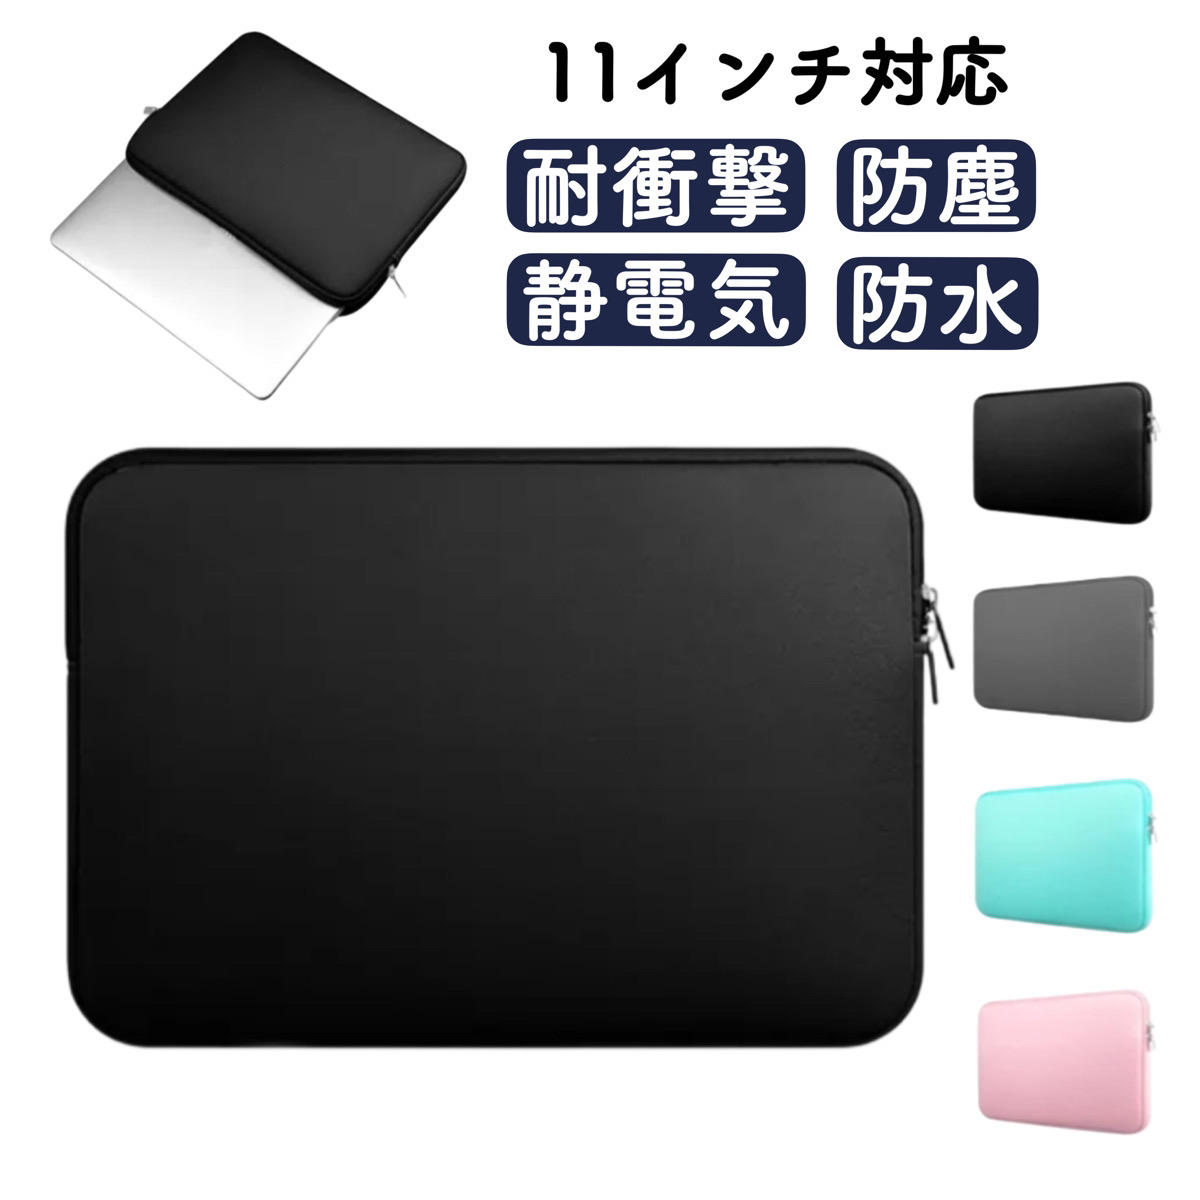  планшет кейс 11 дюймовый ноутбук кейс ipad модный легкий водонепроницаемый покрытие Note PC сумка Note PC кейс 